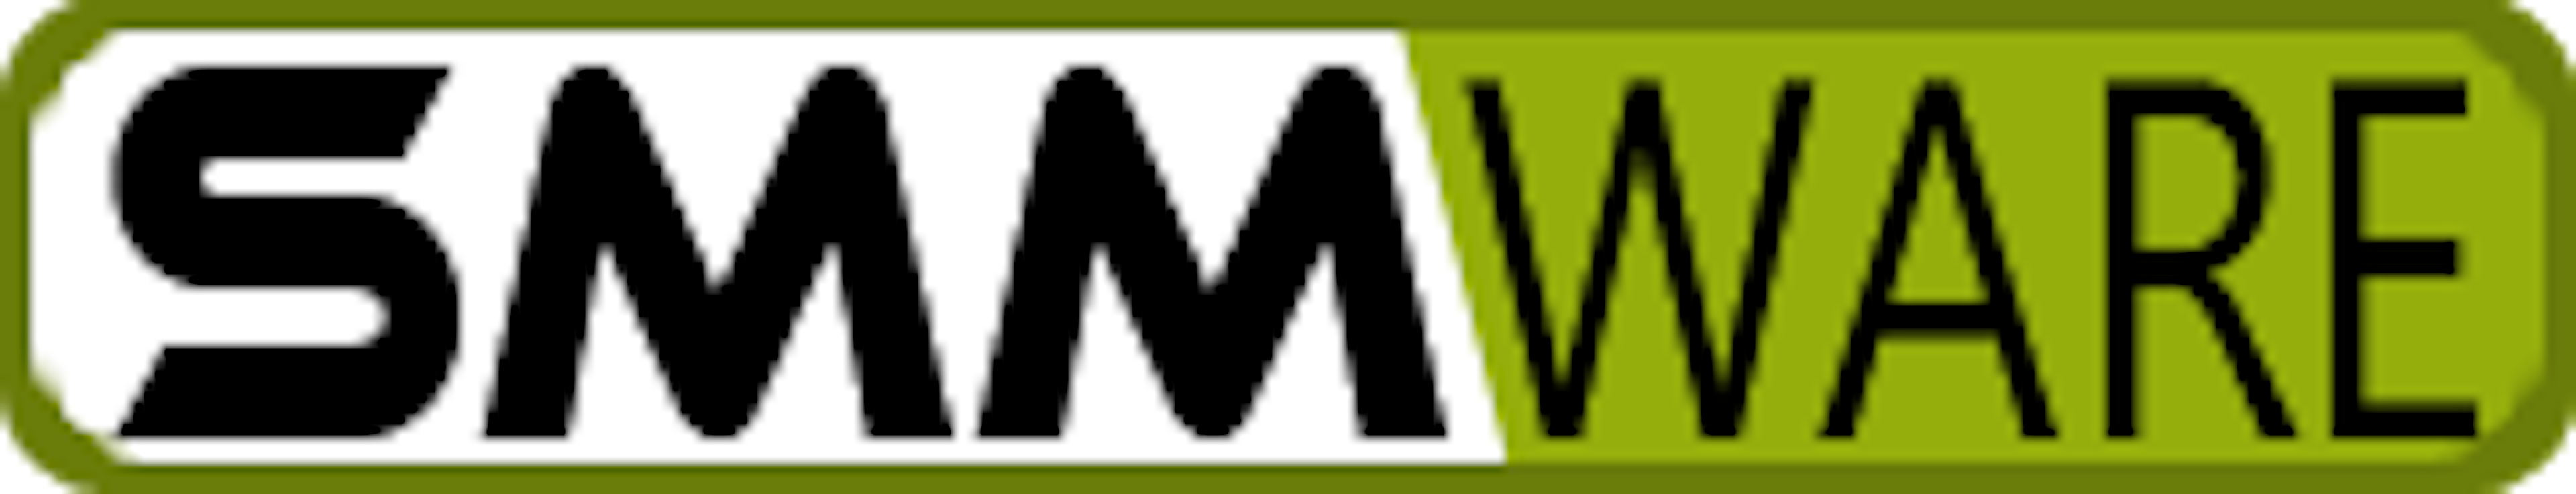 SMMware Logo